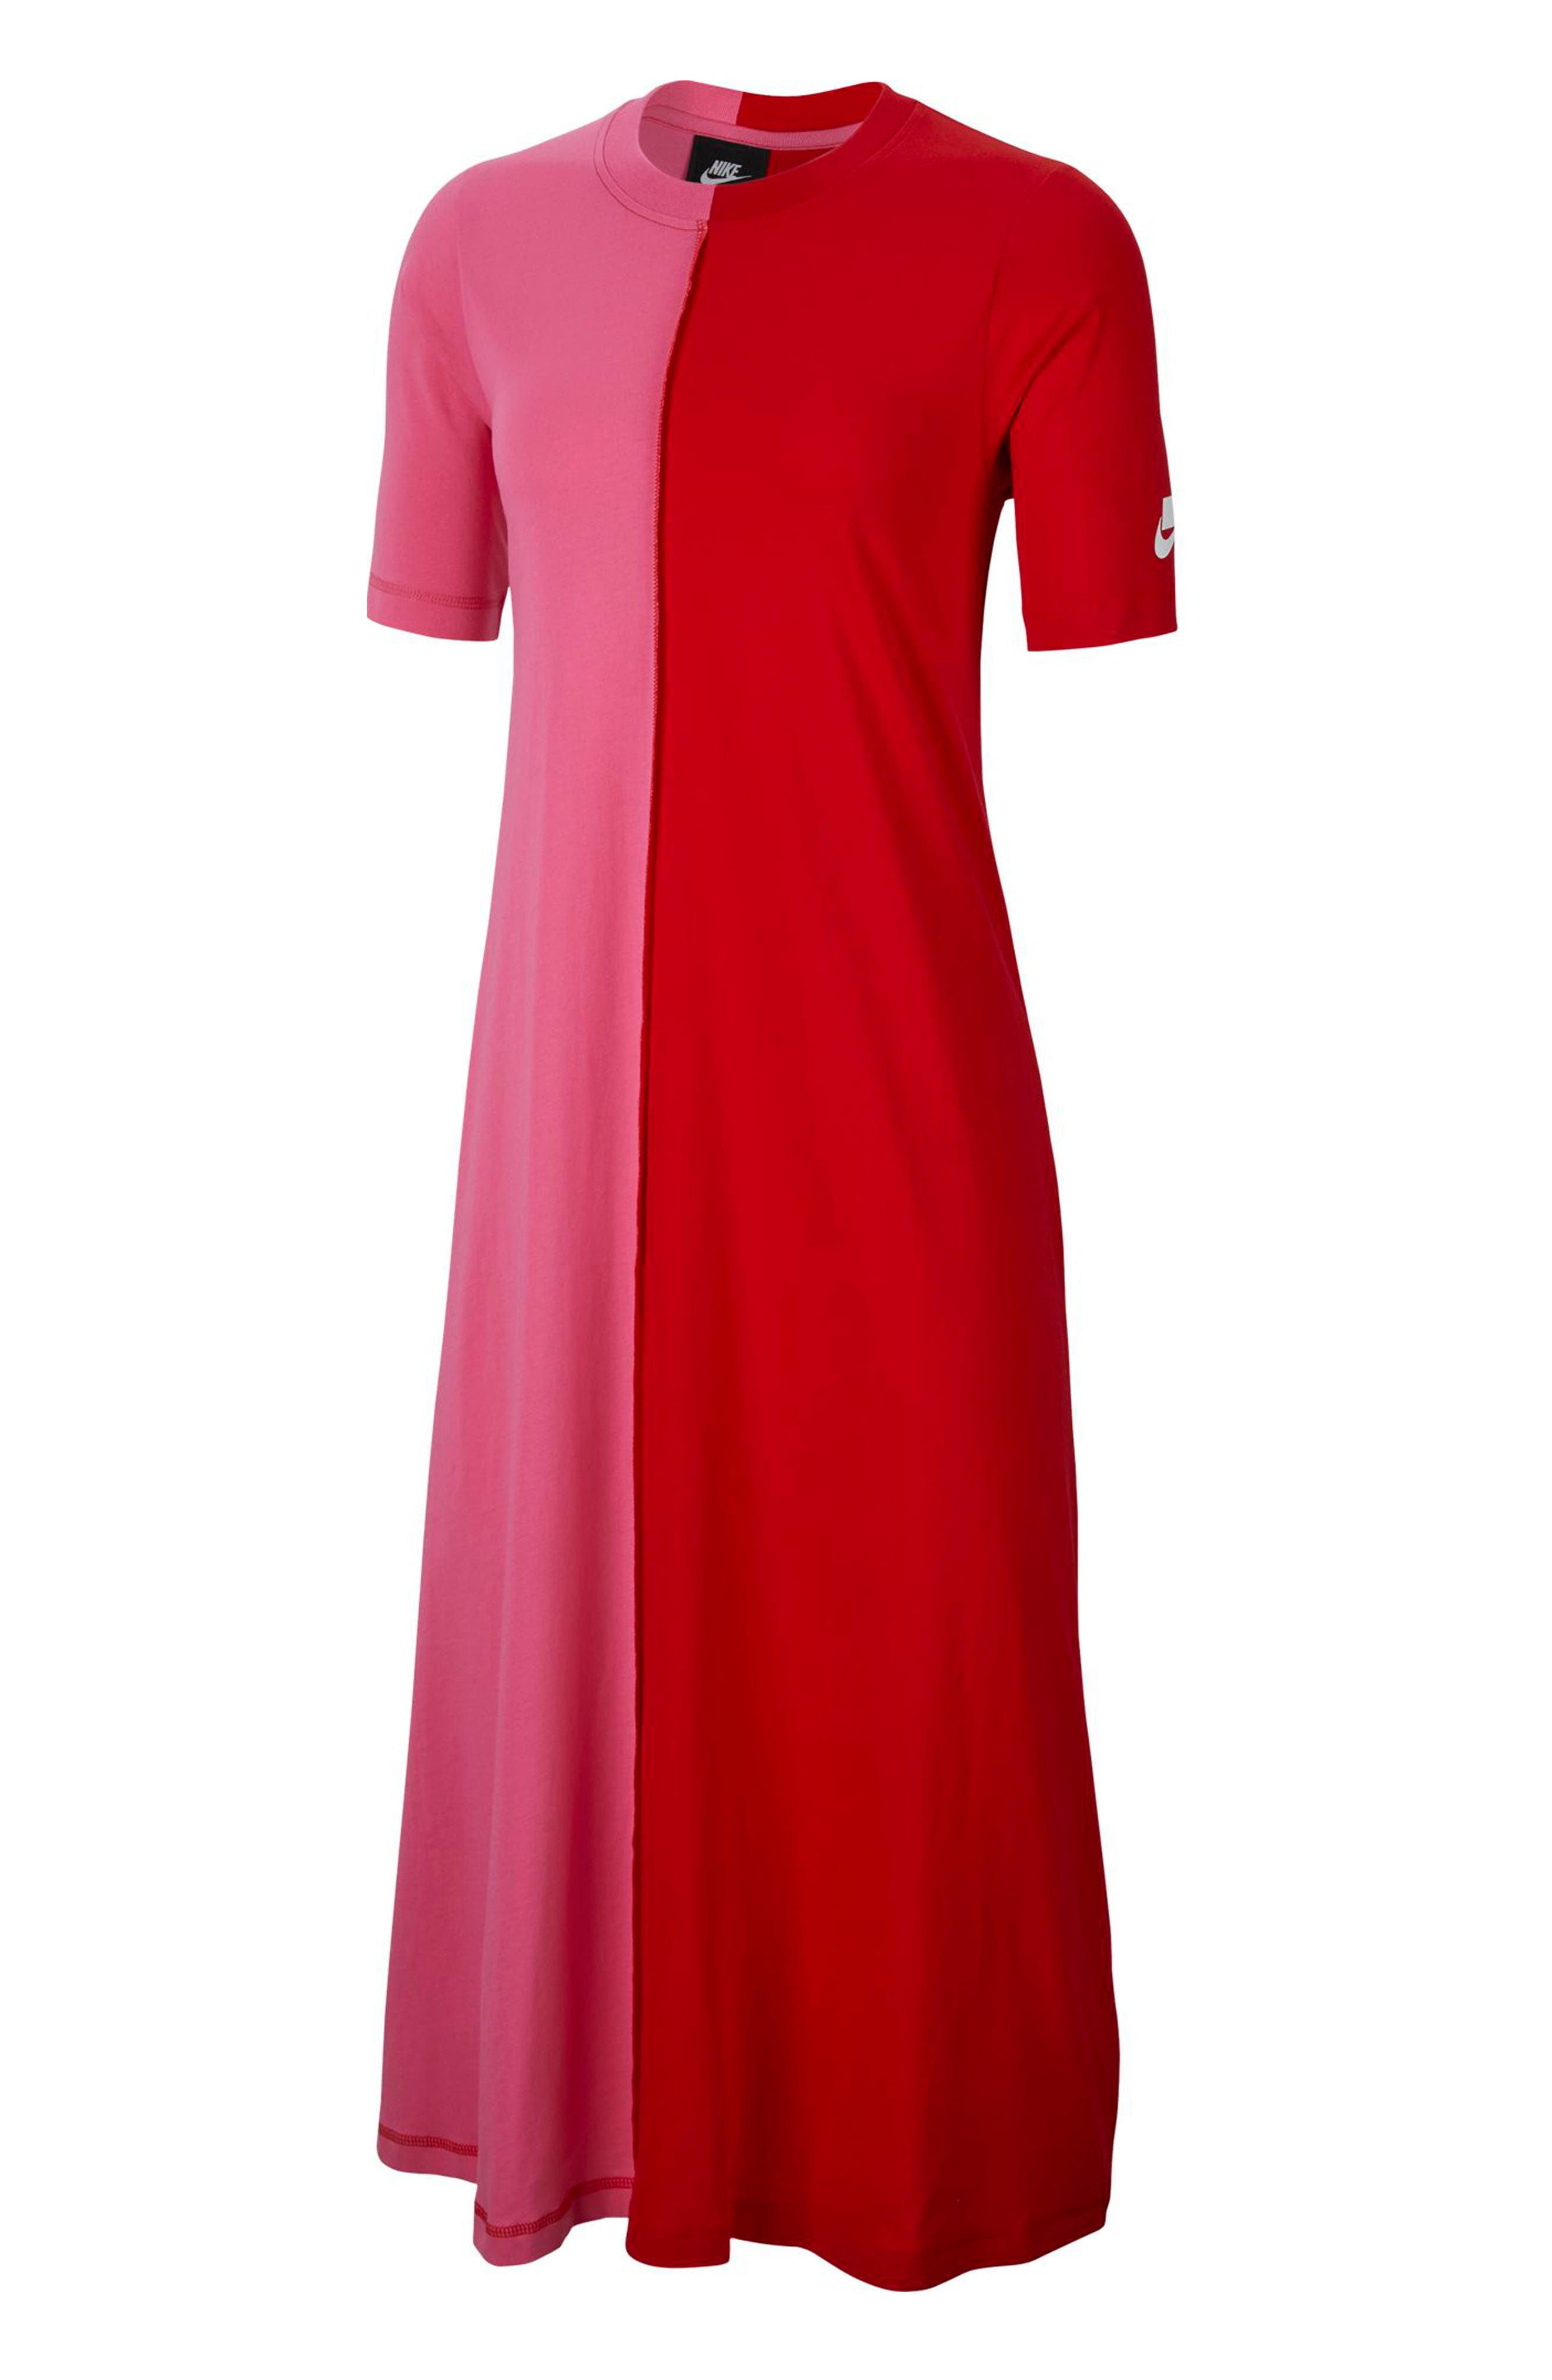 nordstrom red dress sale